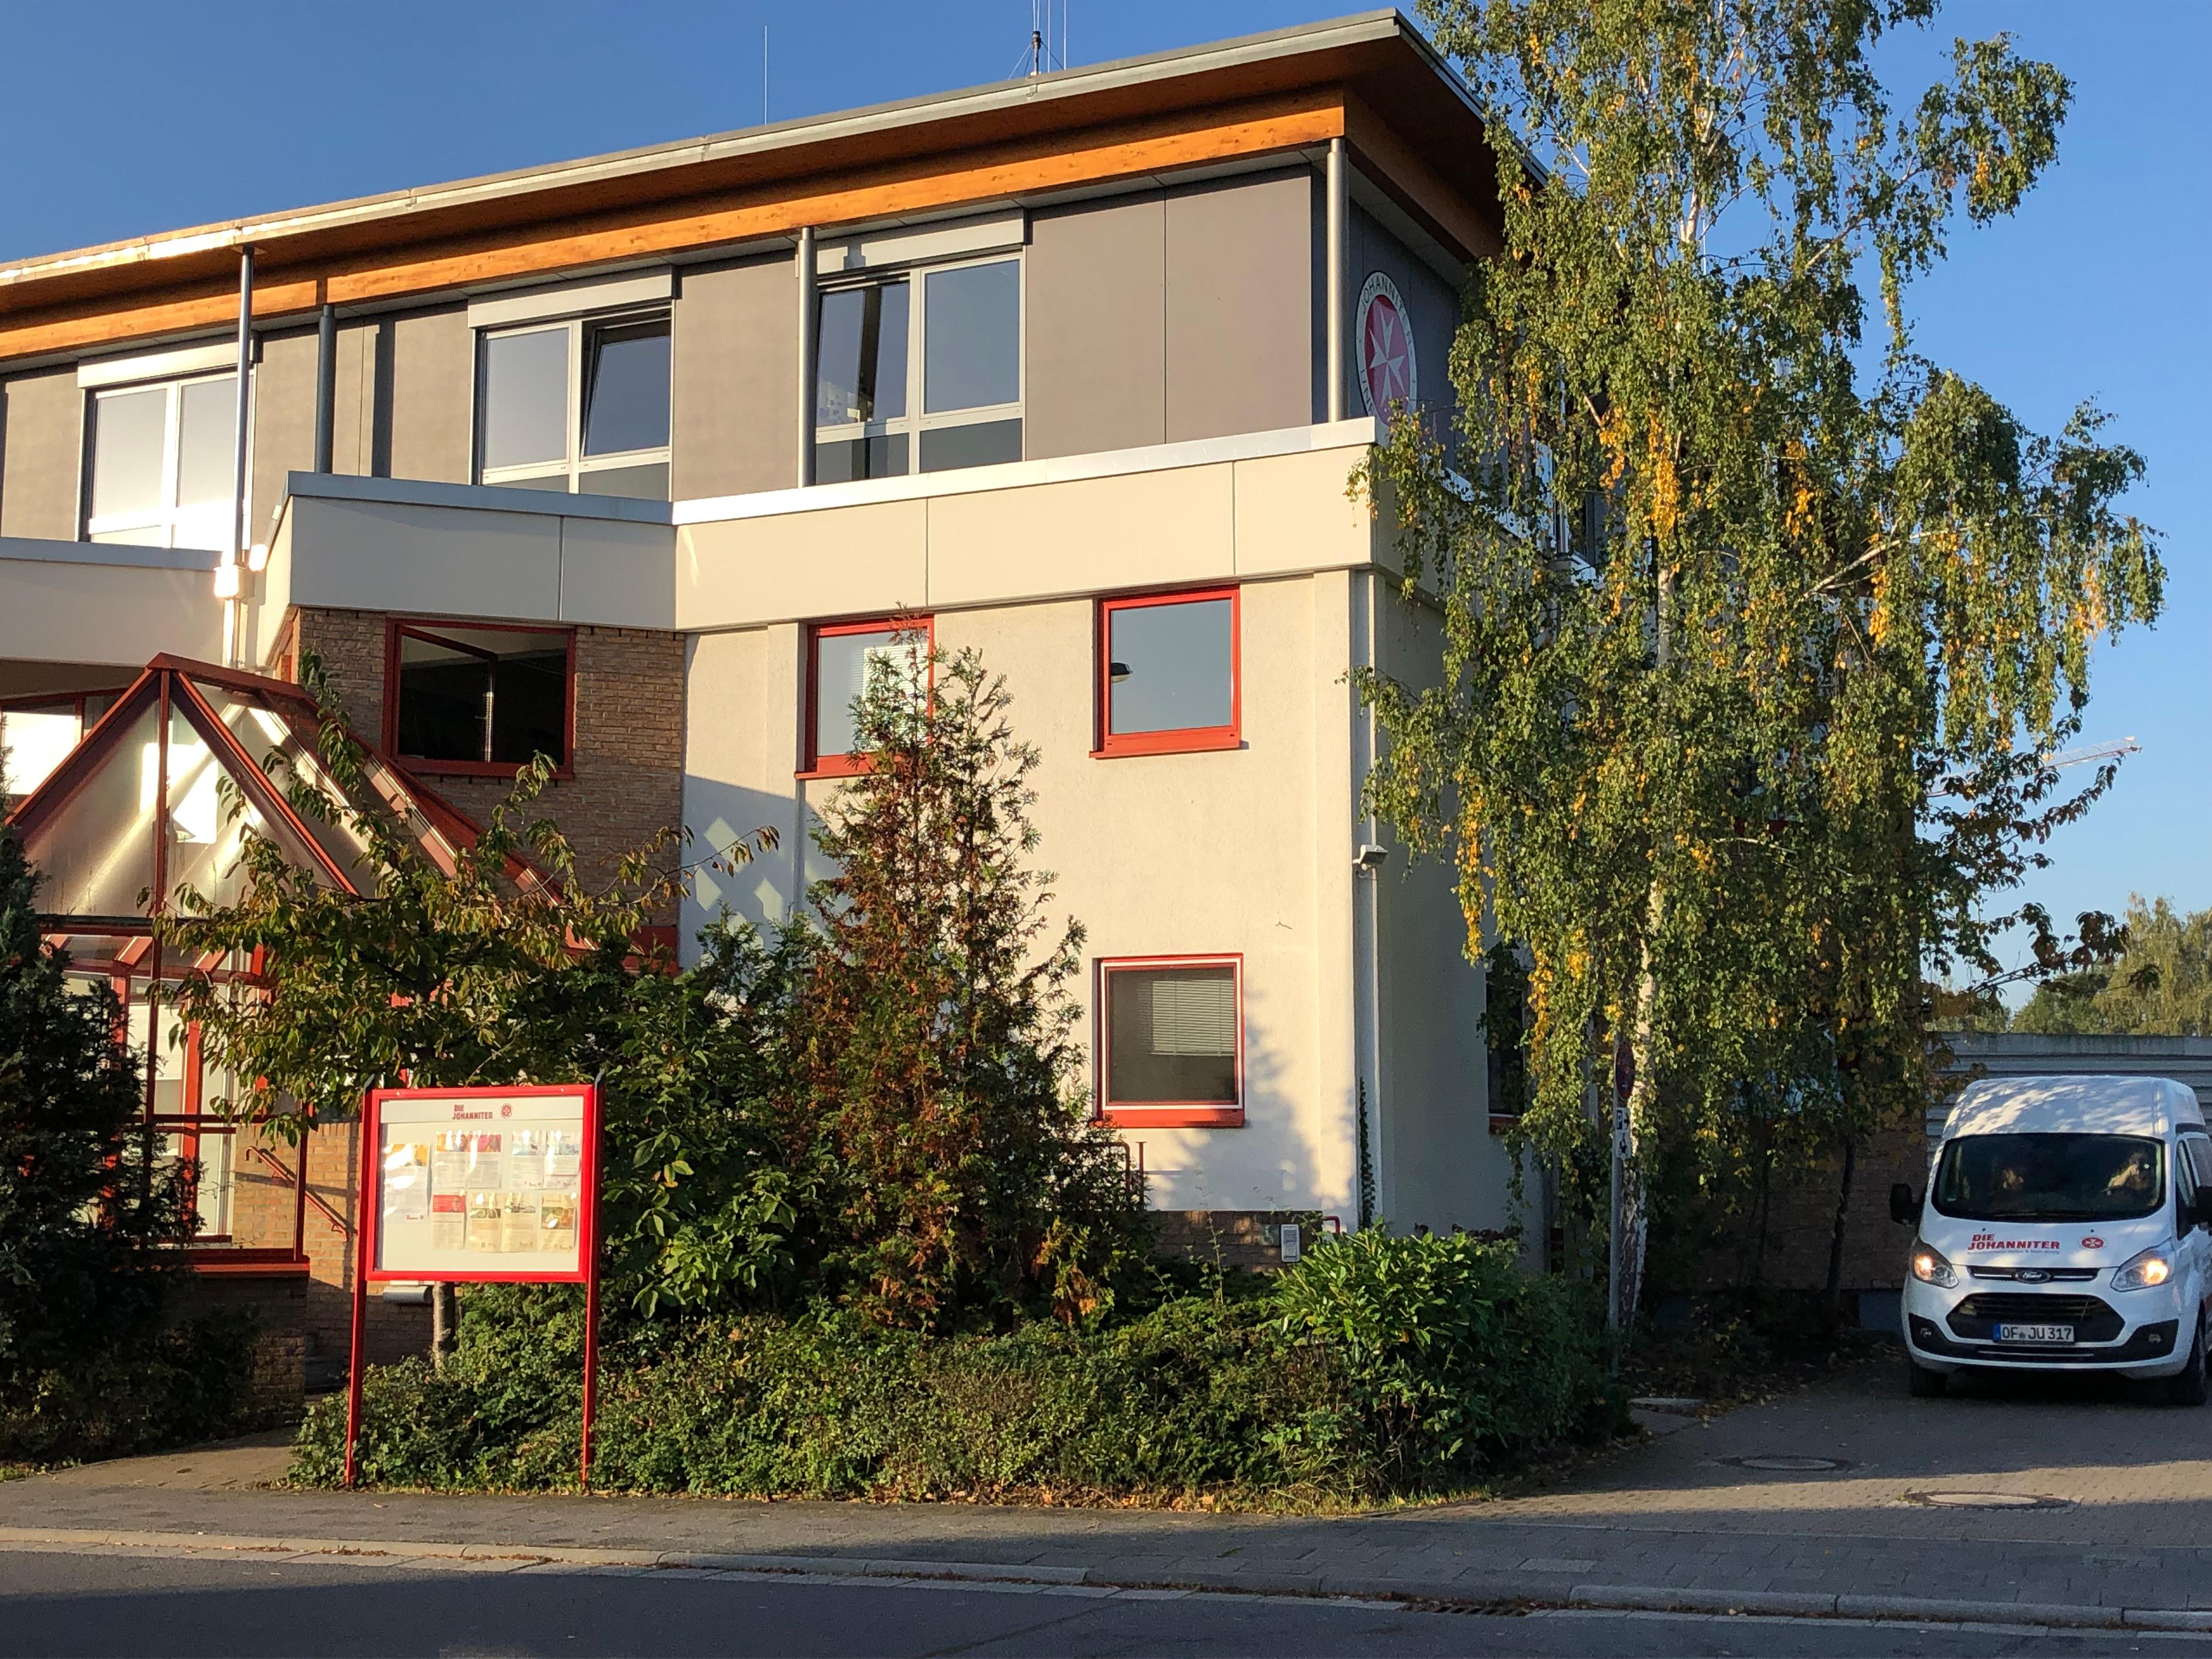 Johanniter-Unfall-Hilfe e.V. - Geschäftsstelle Rodgau, Borsigstraße 56 in Rodgau